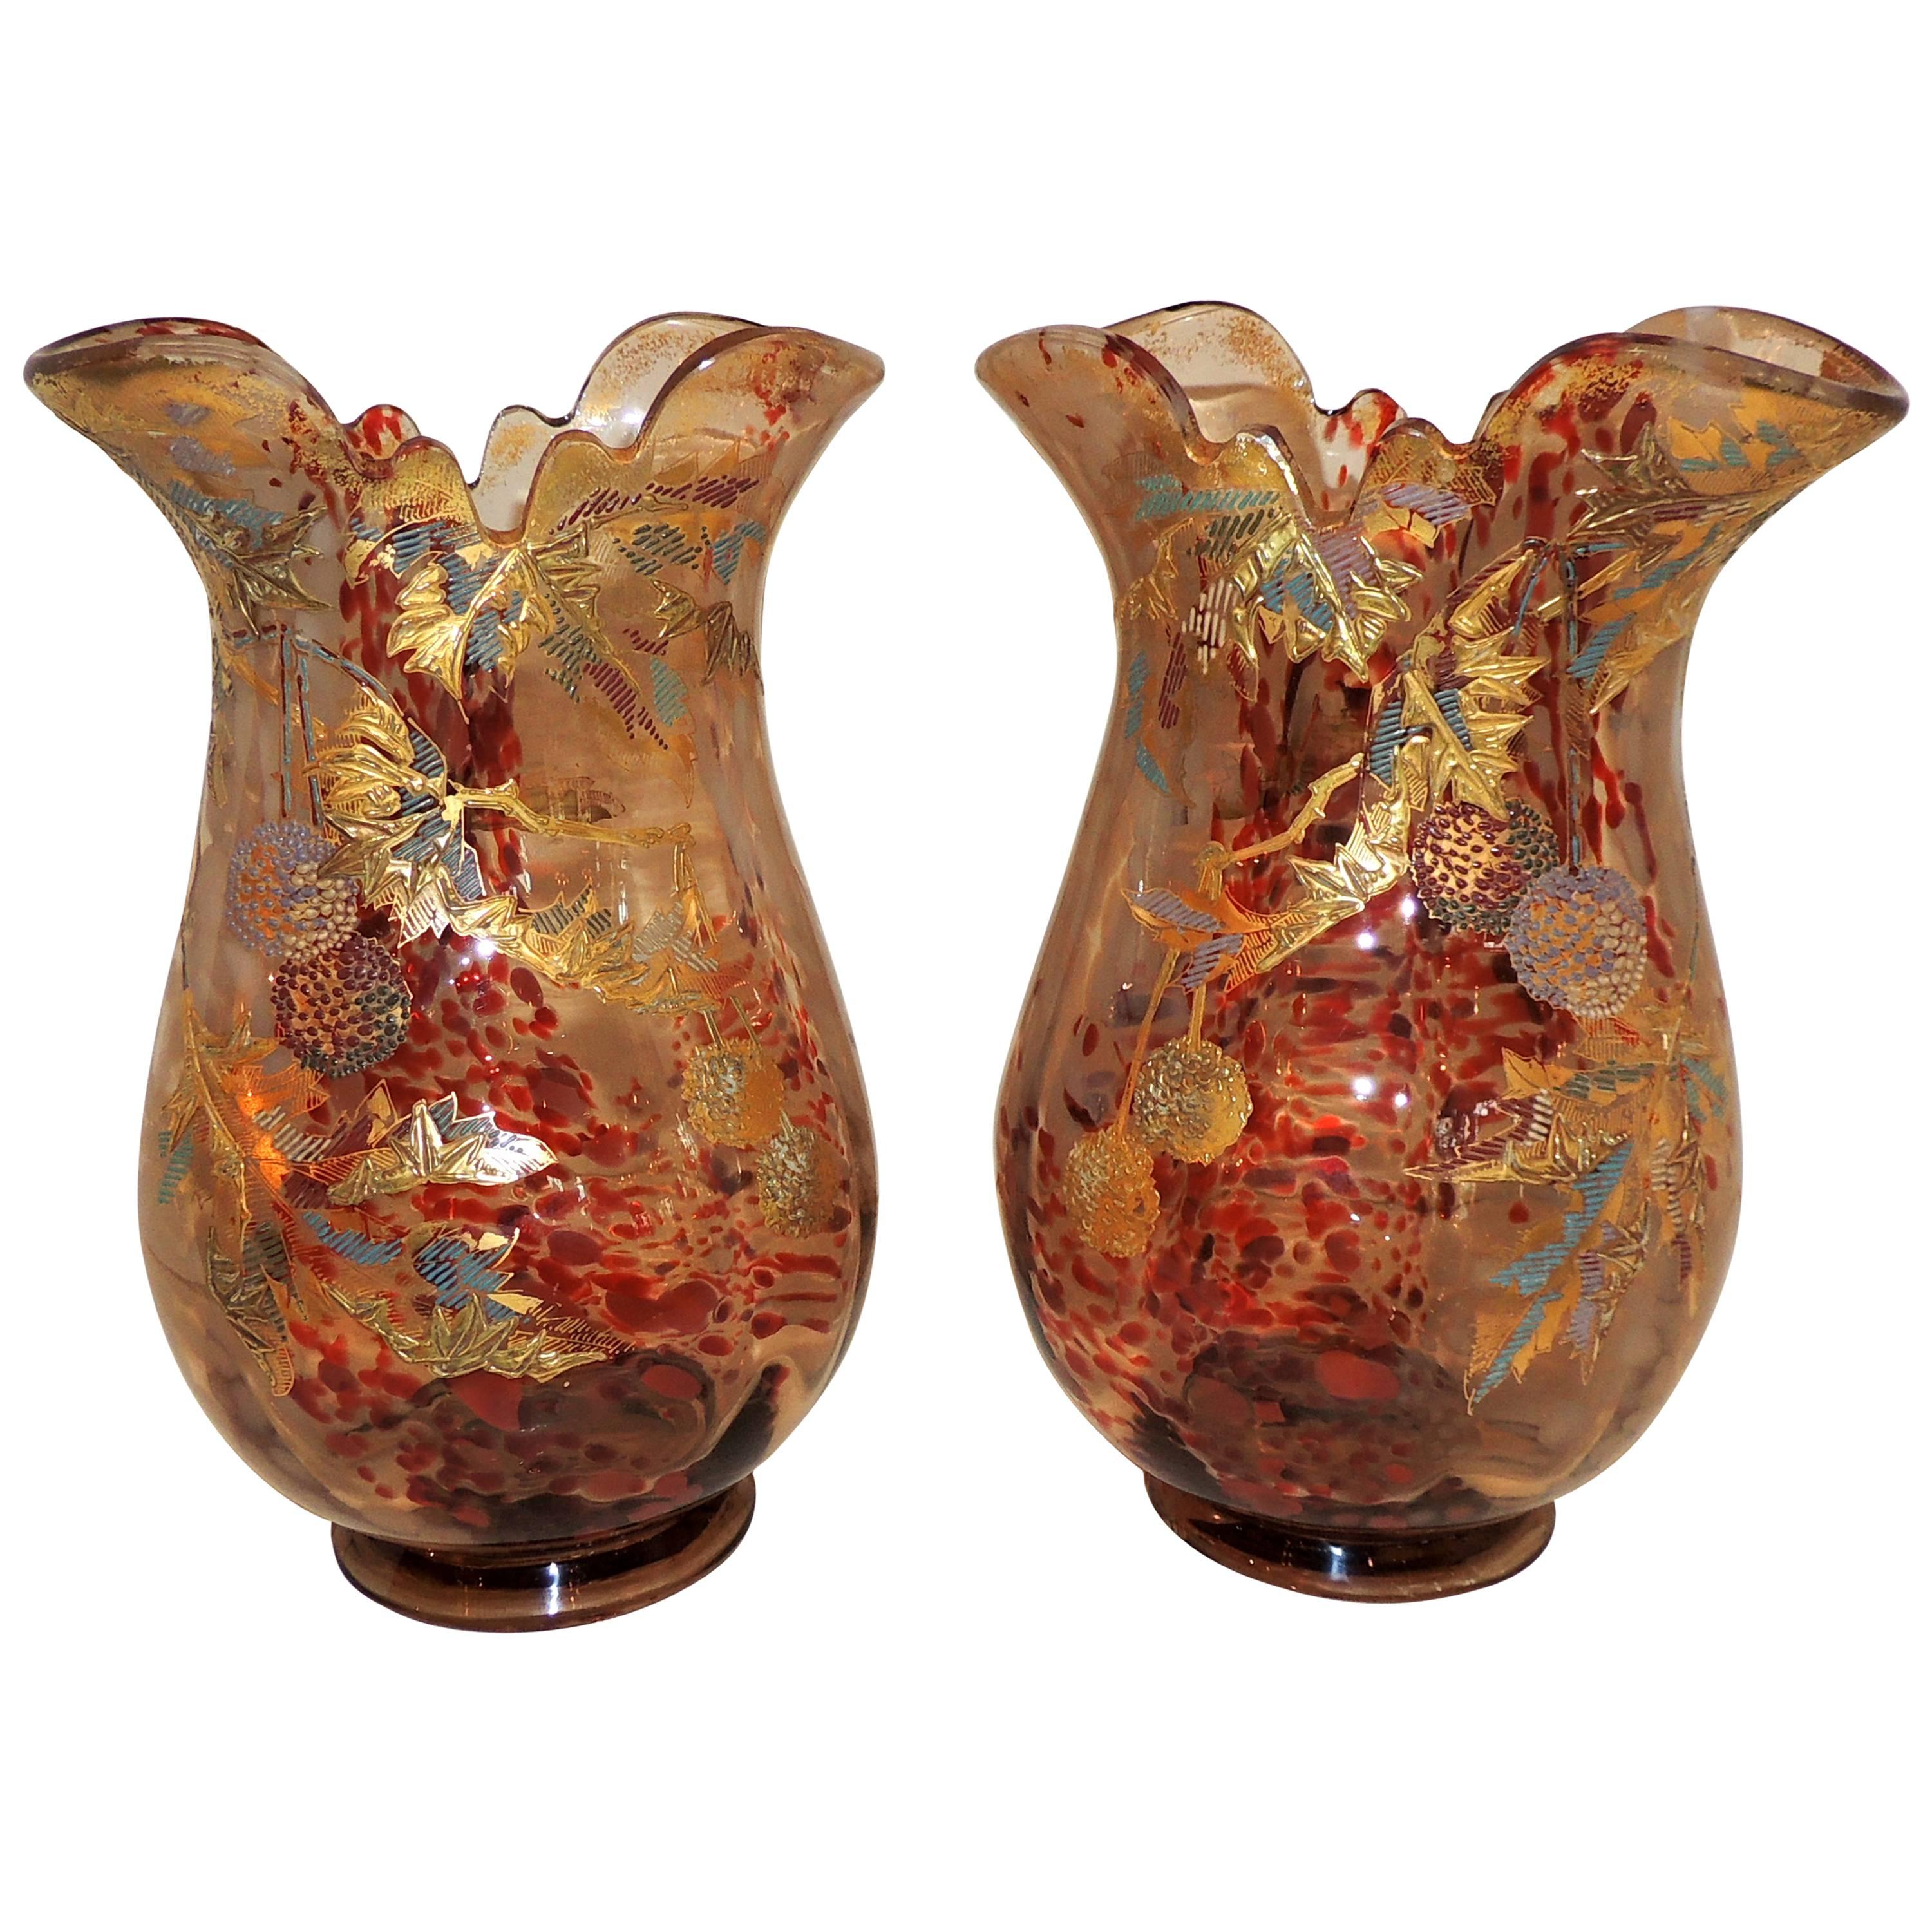 Wonderful Pair Moser Vases Fine Quality Art Glass Art Nouveau Deco Gilt Enamel